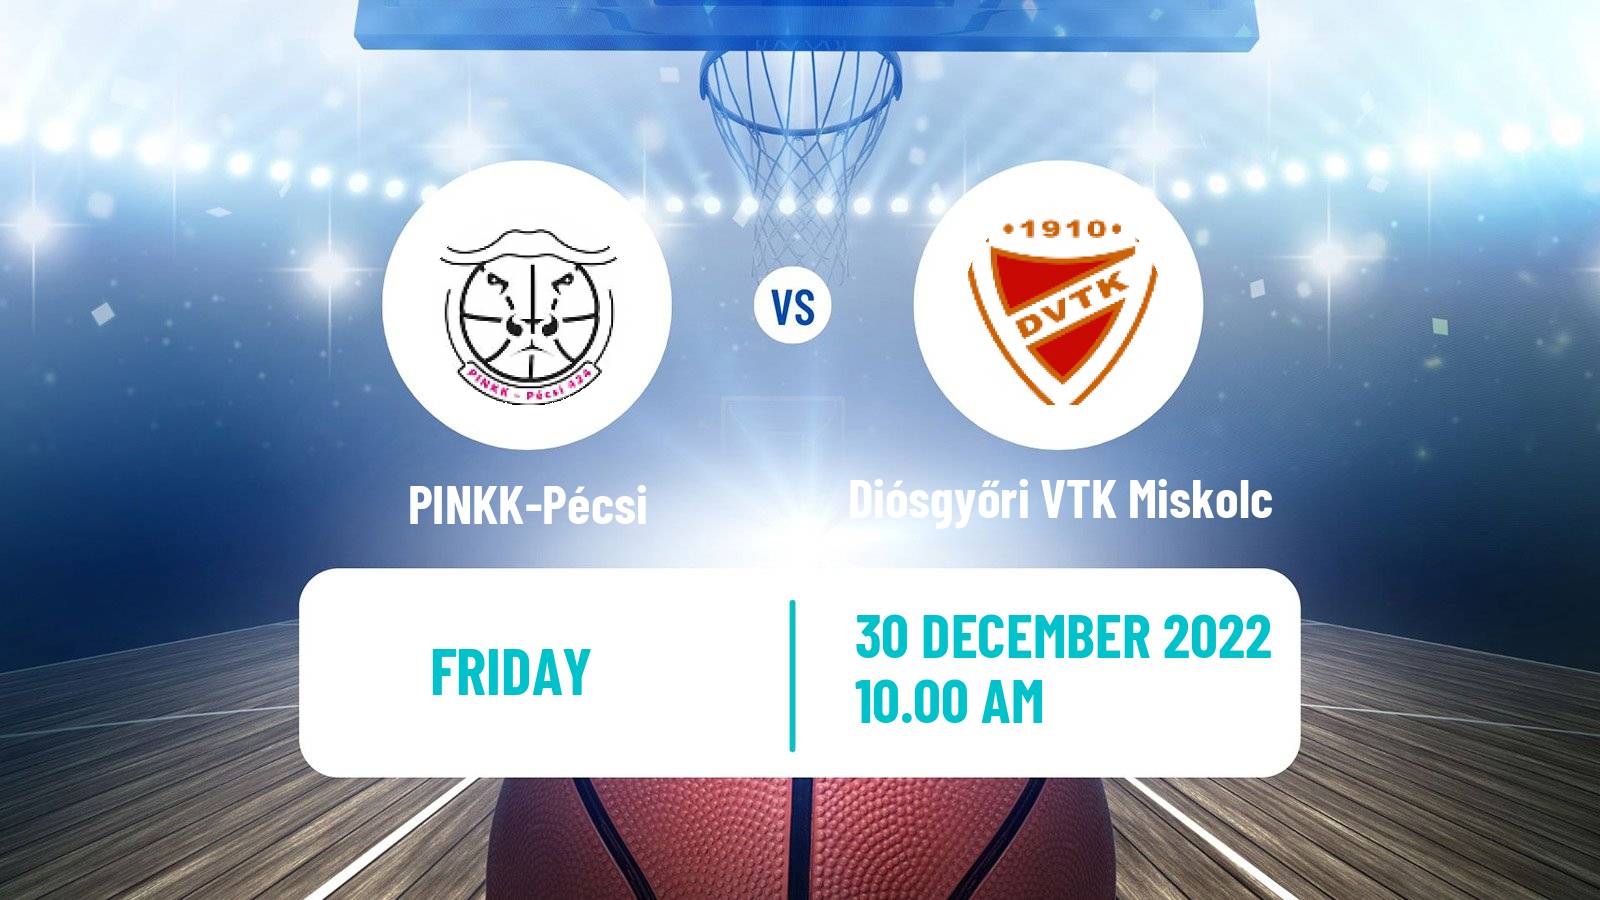 Basketball Hungarian NB I Basketball Women PINKK-Pécsi - Diósgyőri VTK Miskolc